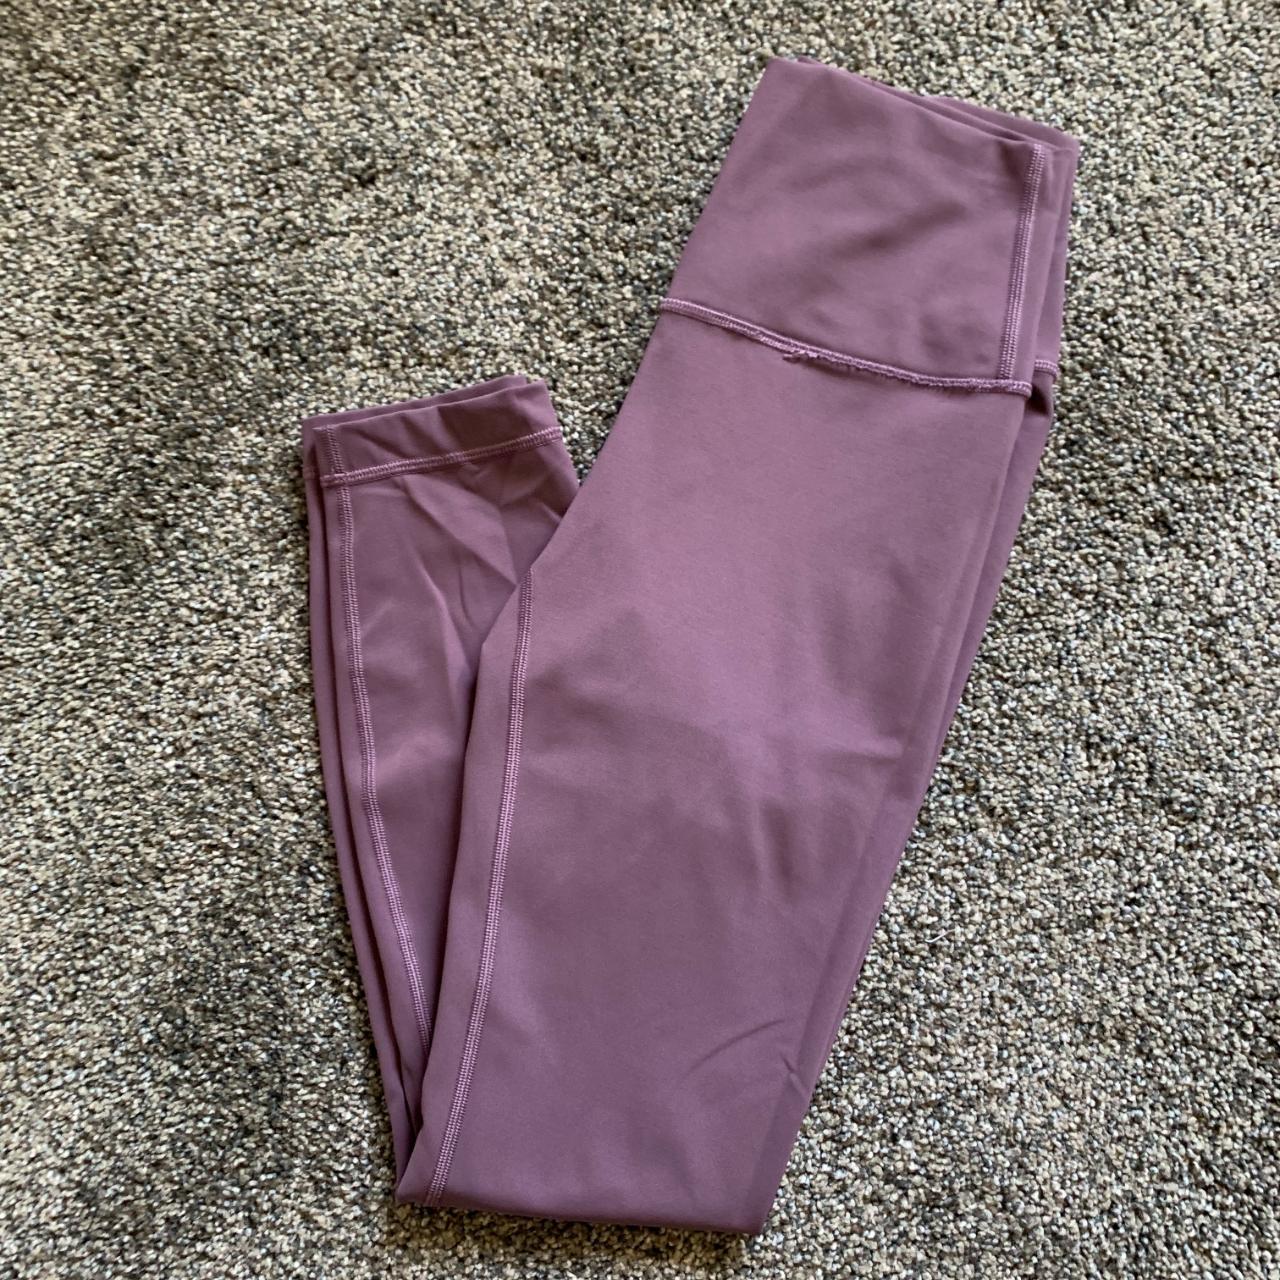 Light purple Lululemon leggings Worn multiple times - Depop